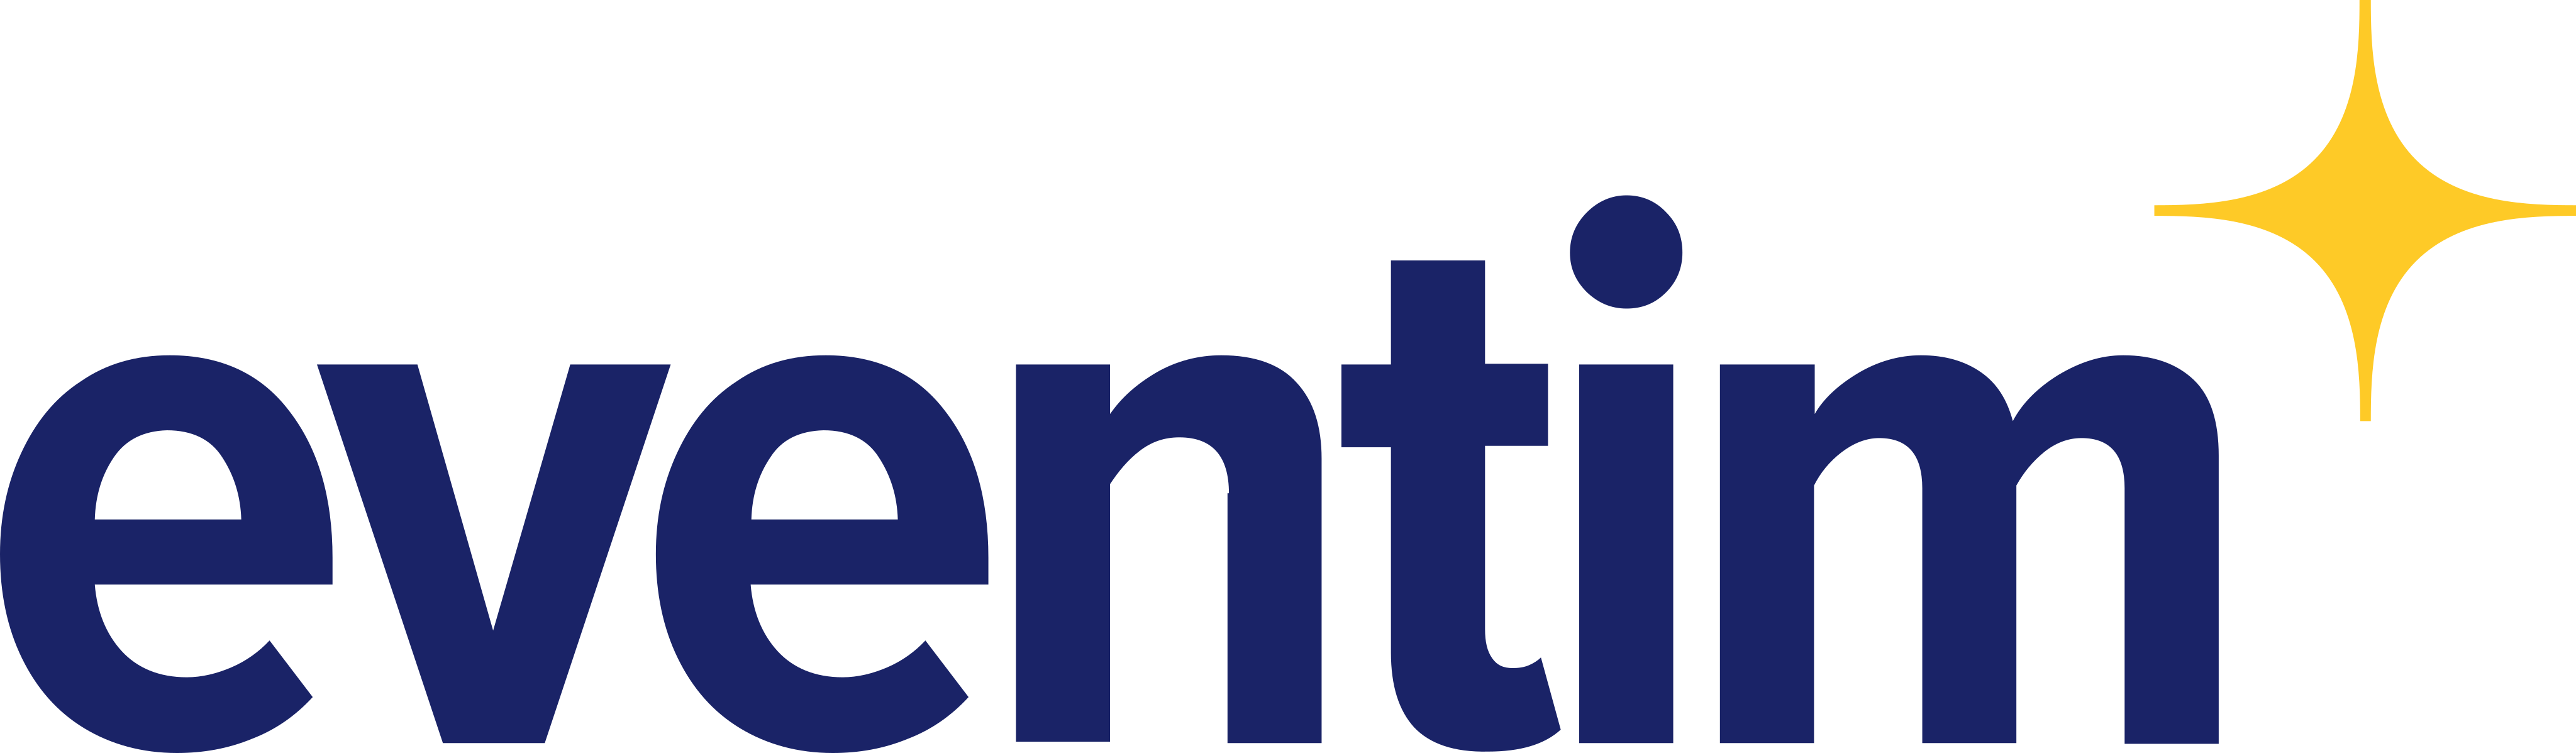 eventim logo - Eventim Logo